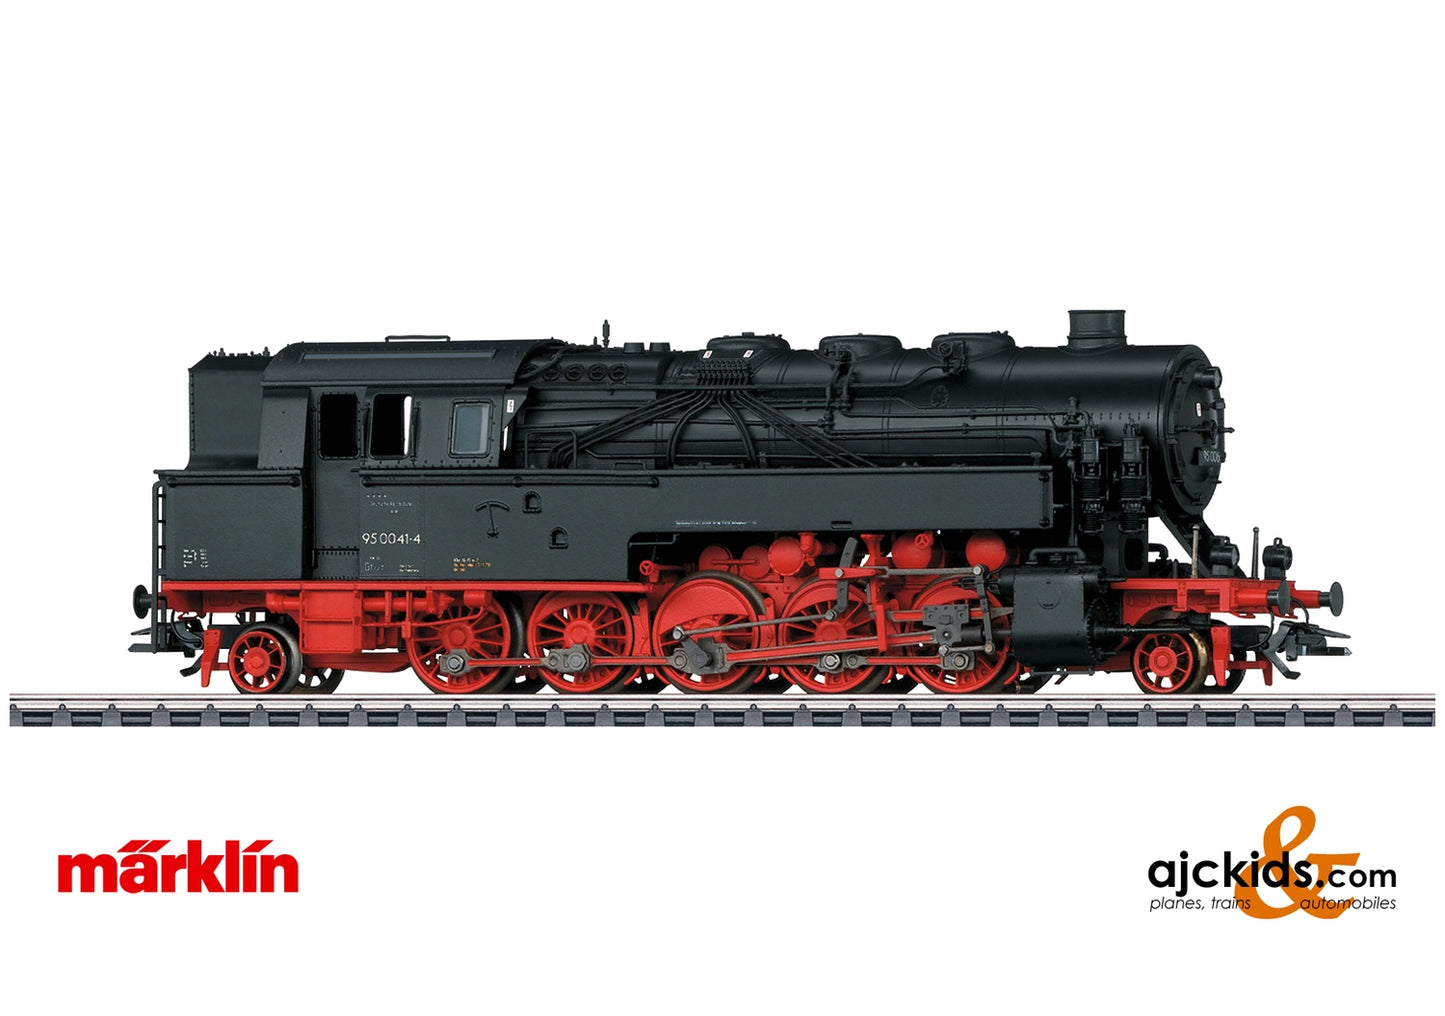 Marklin 39097 - Class 95.0 Steam Locomotive with Oil Firing at Ajckids.com